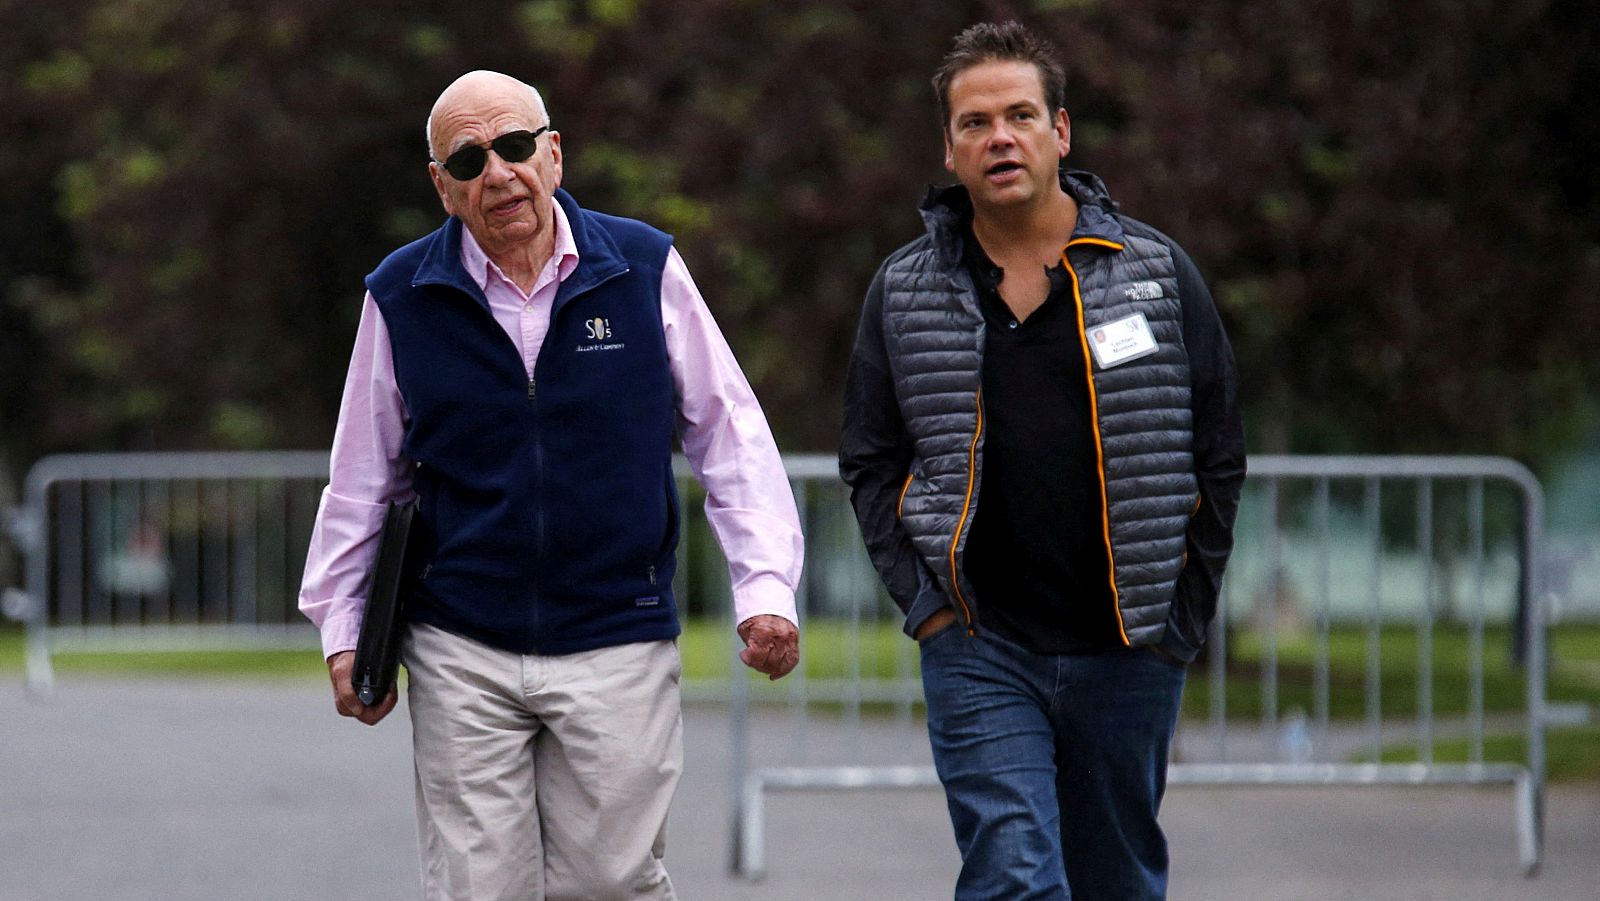 El magnate de los medios Rupert Murdoch se retira y deja a su hijo al frente de su negocio